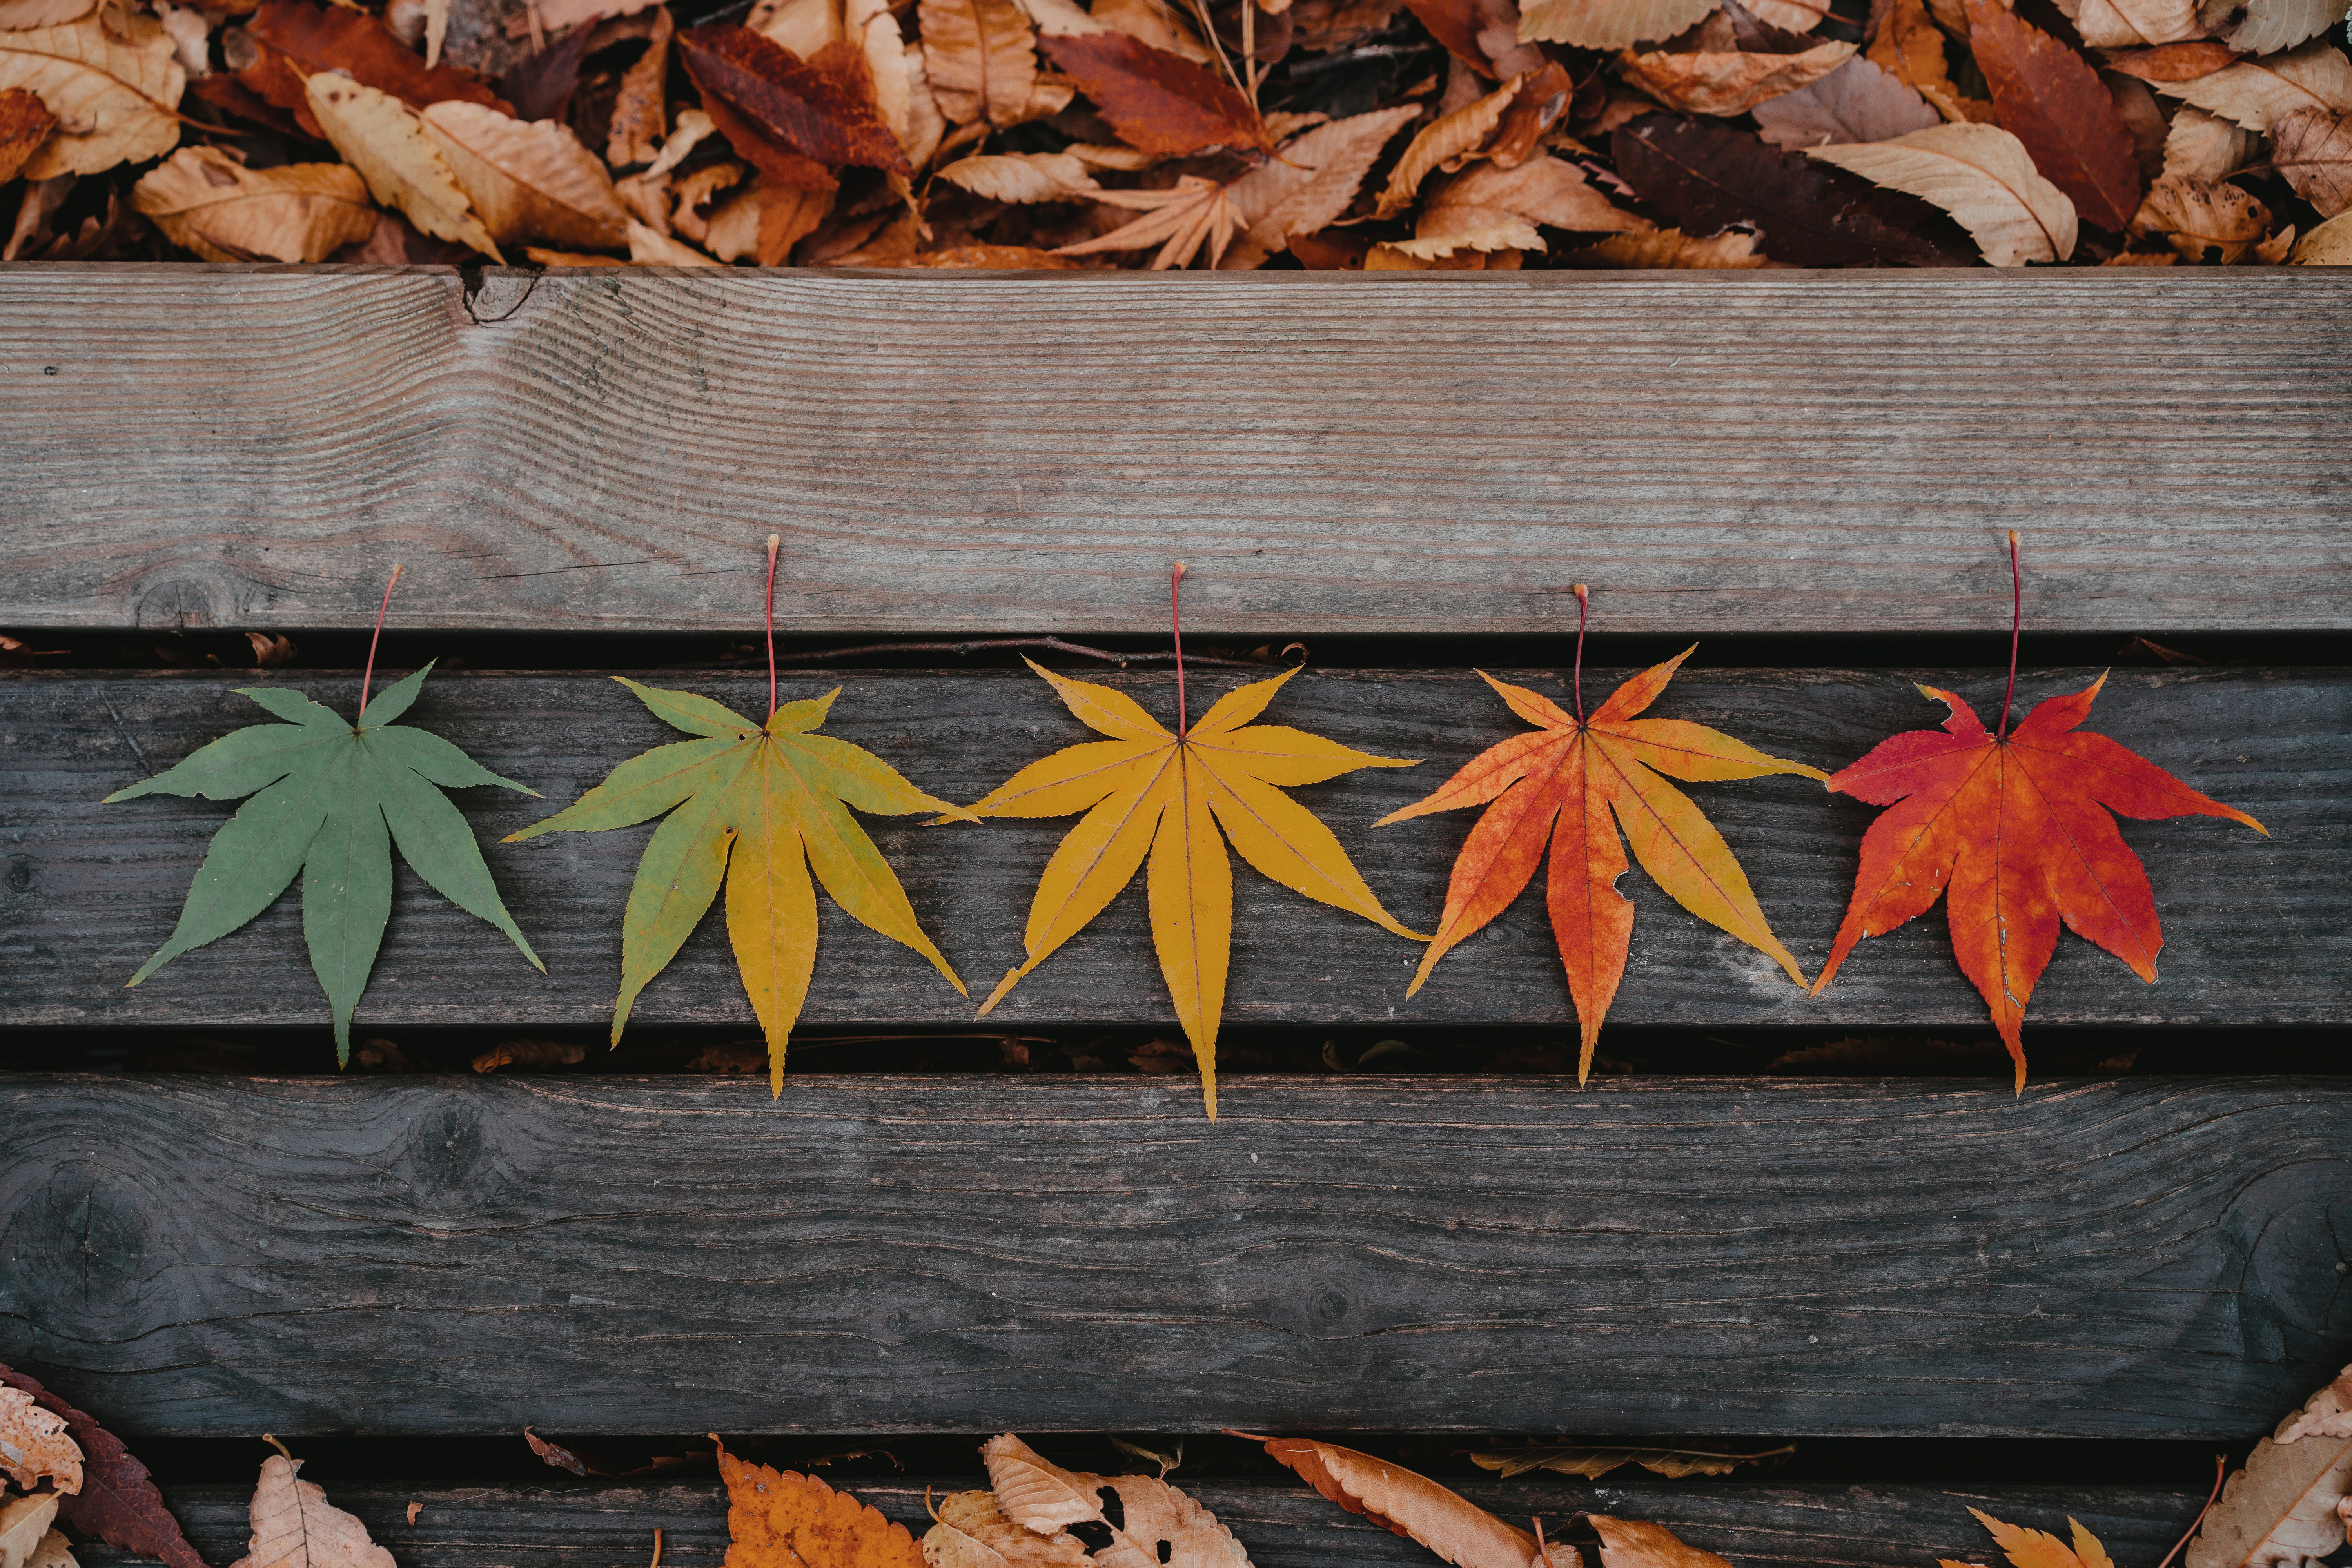 Image décorative représentant 5 feuilles d'arbres posées sur un banc. Les feuilles sont de couleurs différentes, formant un dégradé du vert au marron en passant par le jaune pour représenter les saisons.